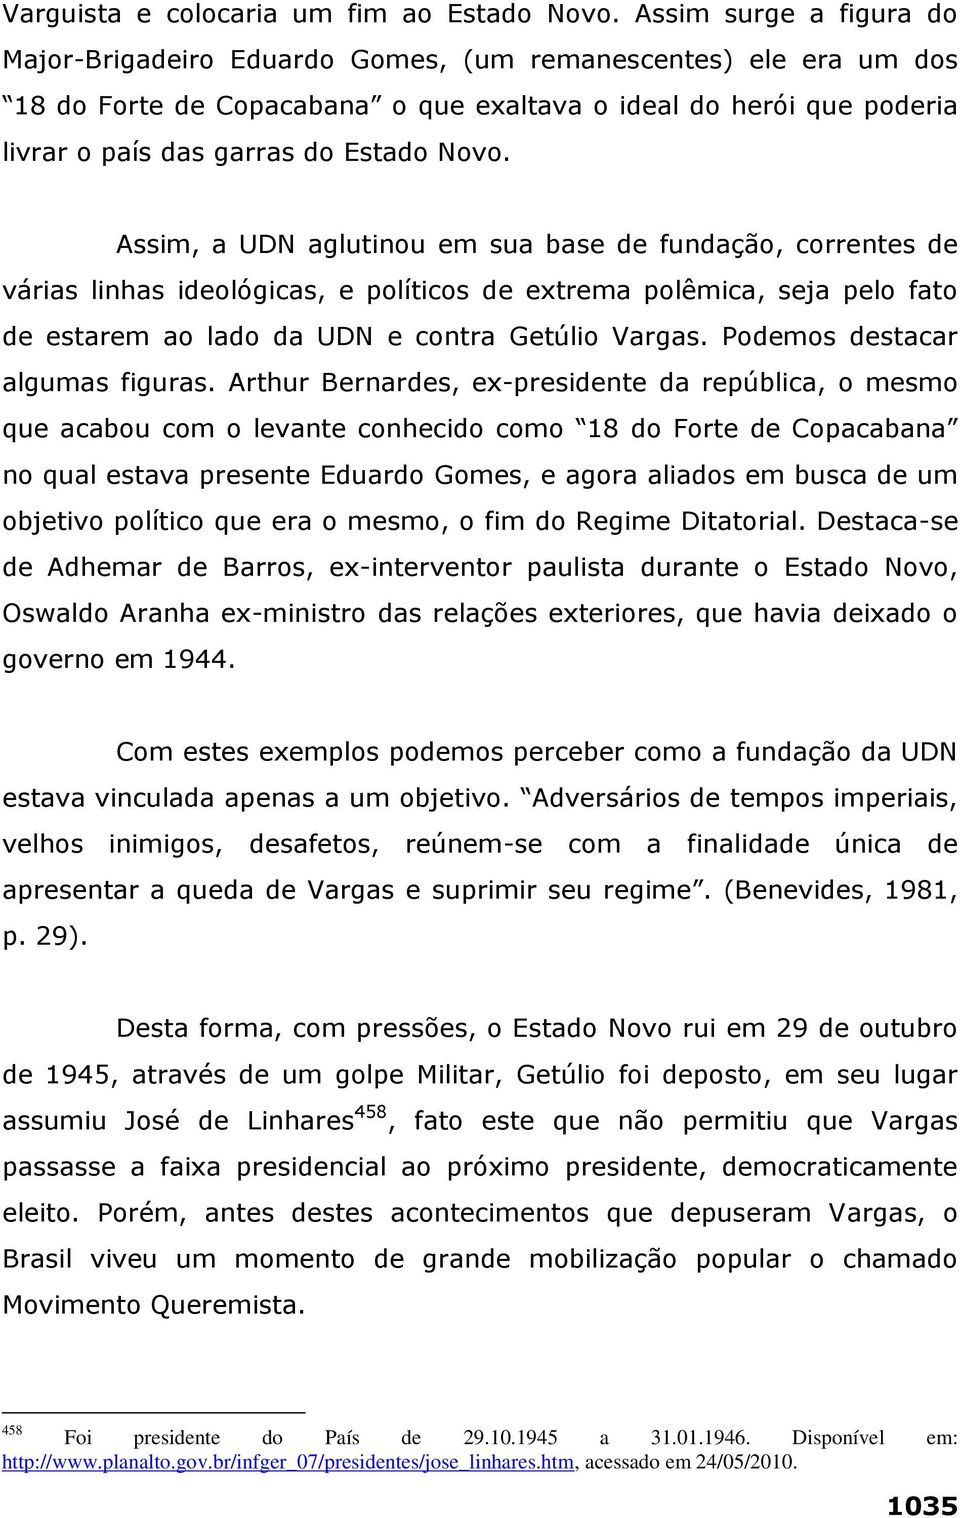 Assim, a UDN aglutinou em sua base de fundação, correntes de várias linhas ideológicas, e políticos de extrema polêmica, seja pelo fato de estarem ao lado da UDN e contra Getúlio Vargas.